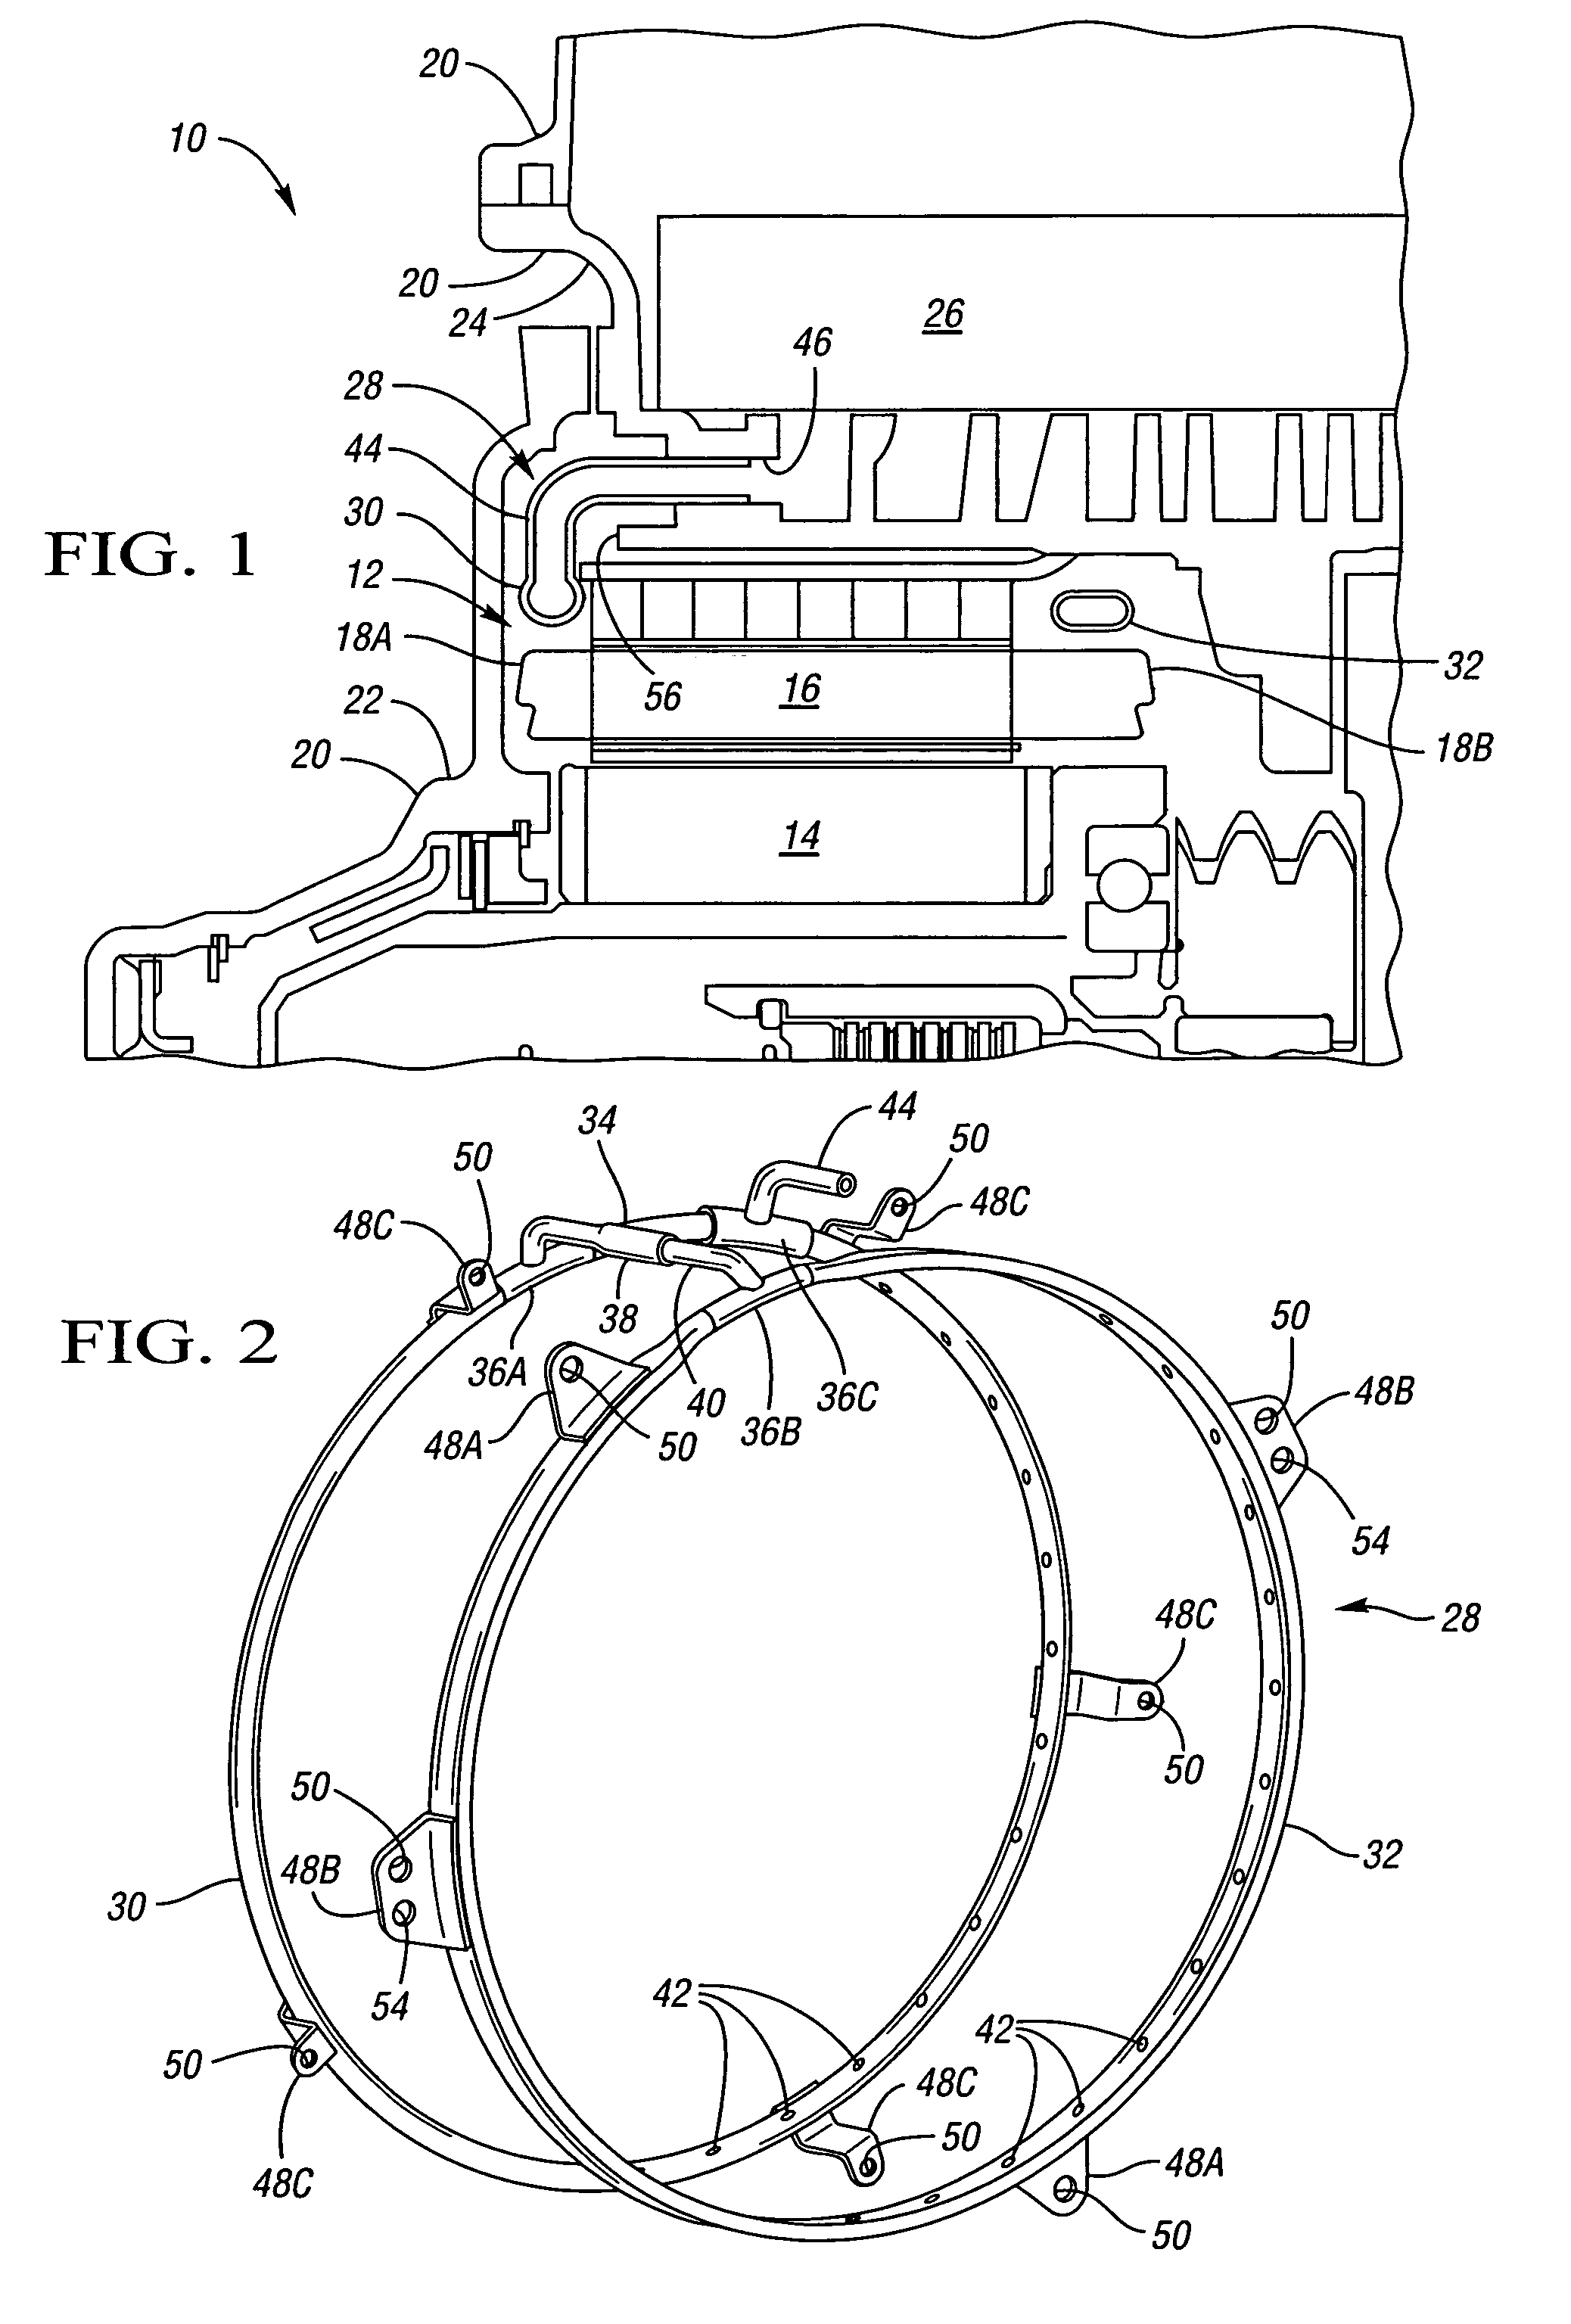 Stator cooling system for a hybrid transmission